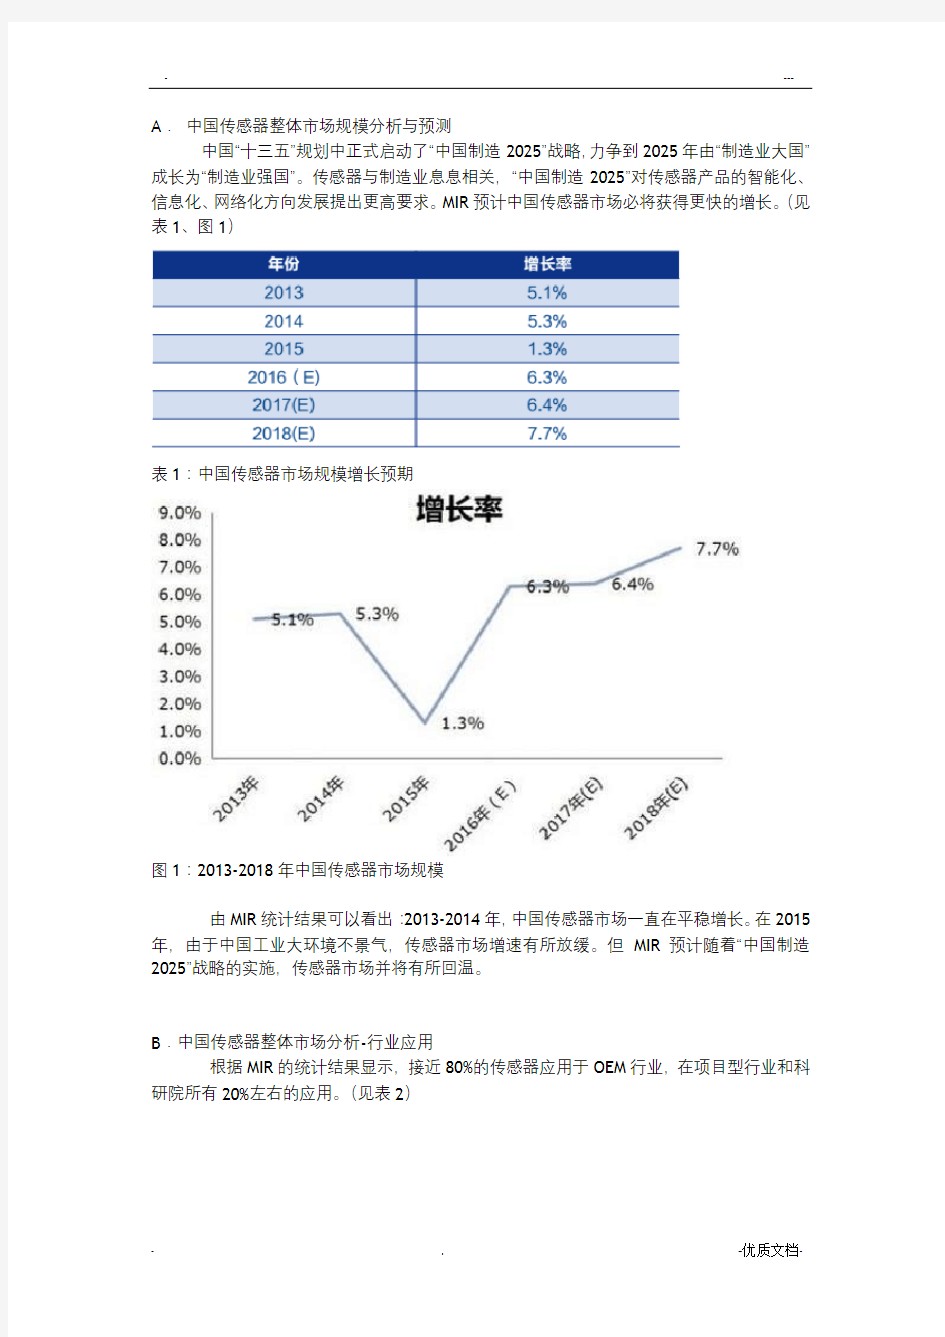 中国传感器市场研究报告